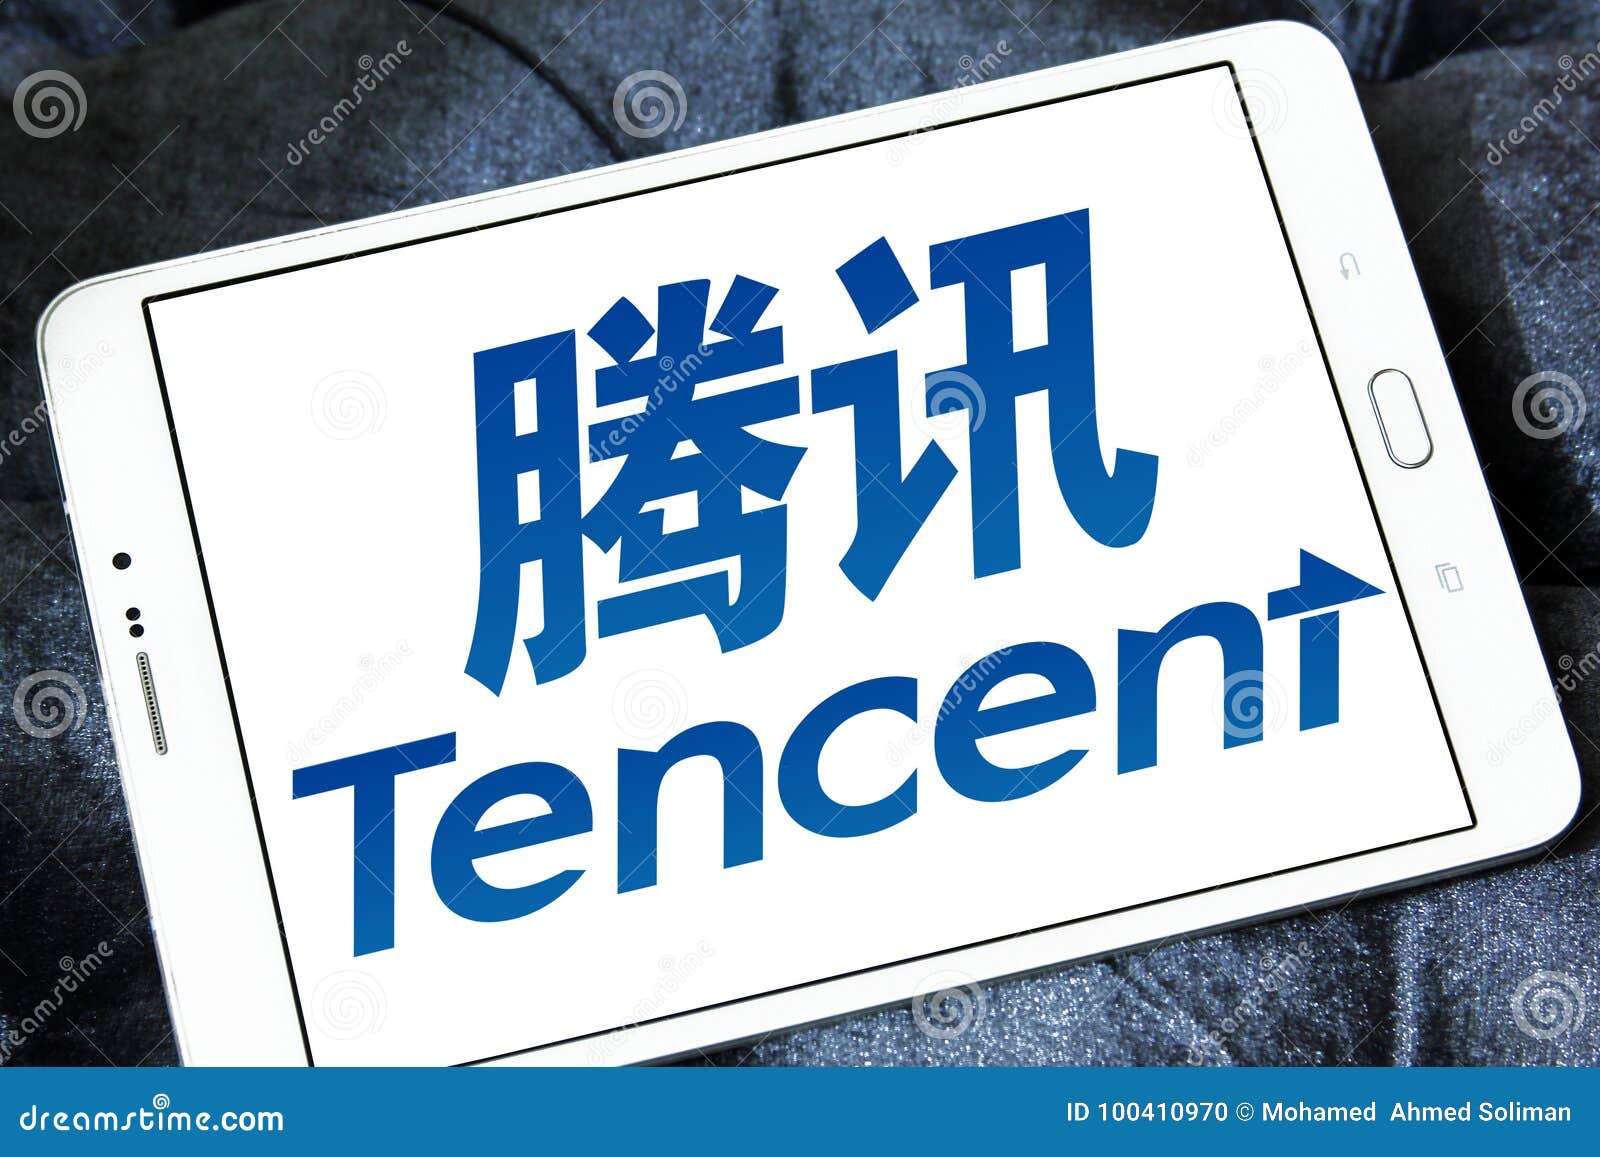 Inskränkt logo för Tencent innehav. Logo av Tencent innehav som begränsas på den samsung minnestavlan Begränsade Tencent innehav är ett hållande företag för kinesisk investering vars dotterbolag ger massmedia, underhållning, betalningsystem, internet och mobiltelefonen värde-tillfogad service och fungerar online-advertizingservice i Kina